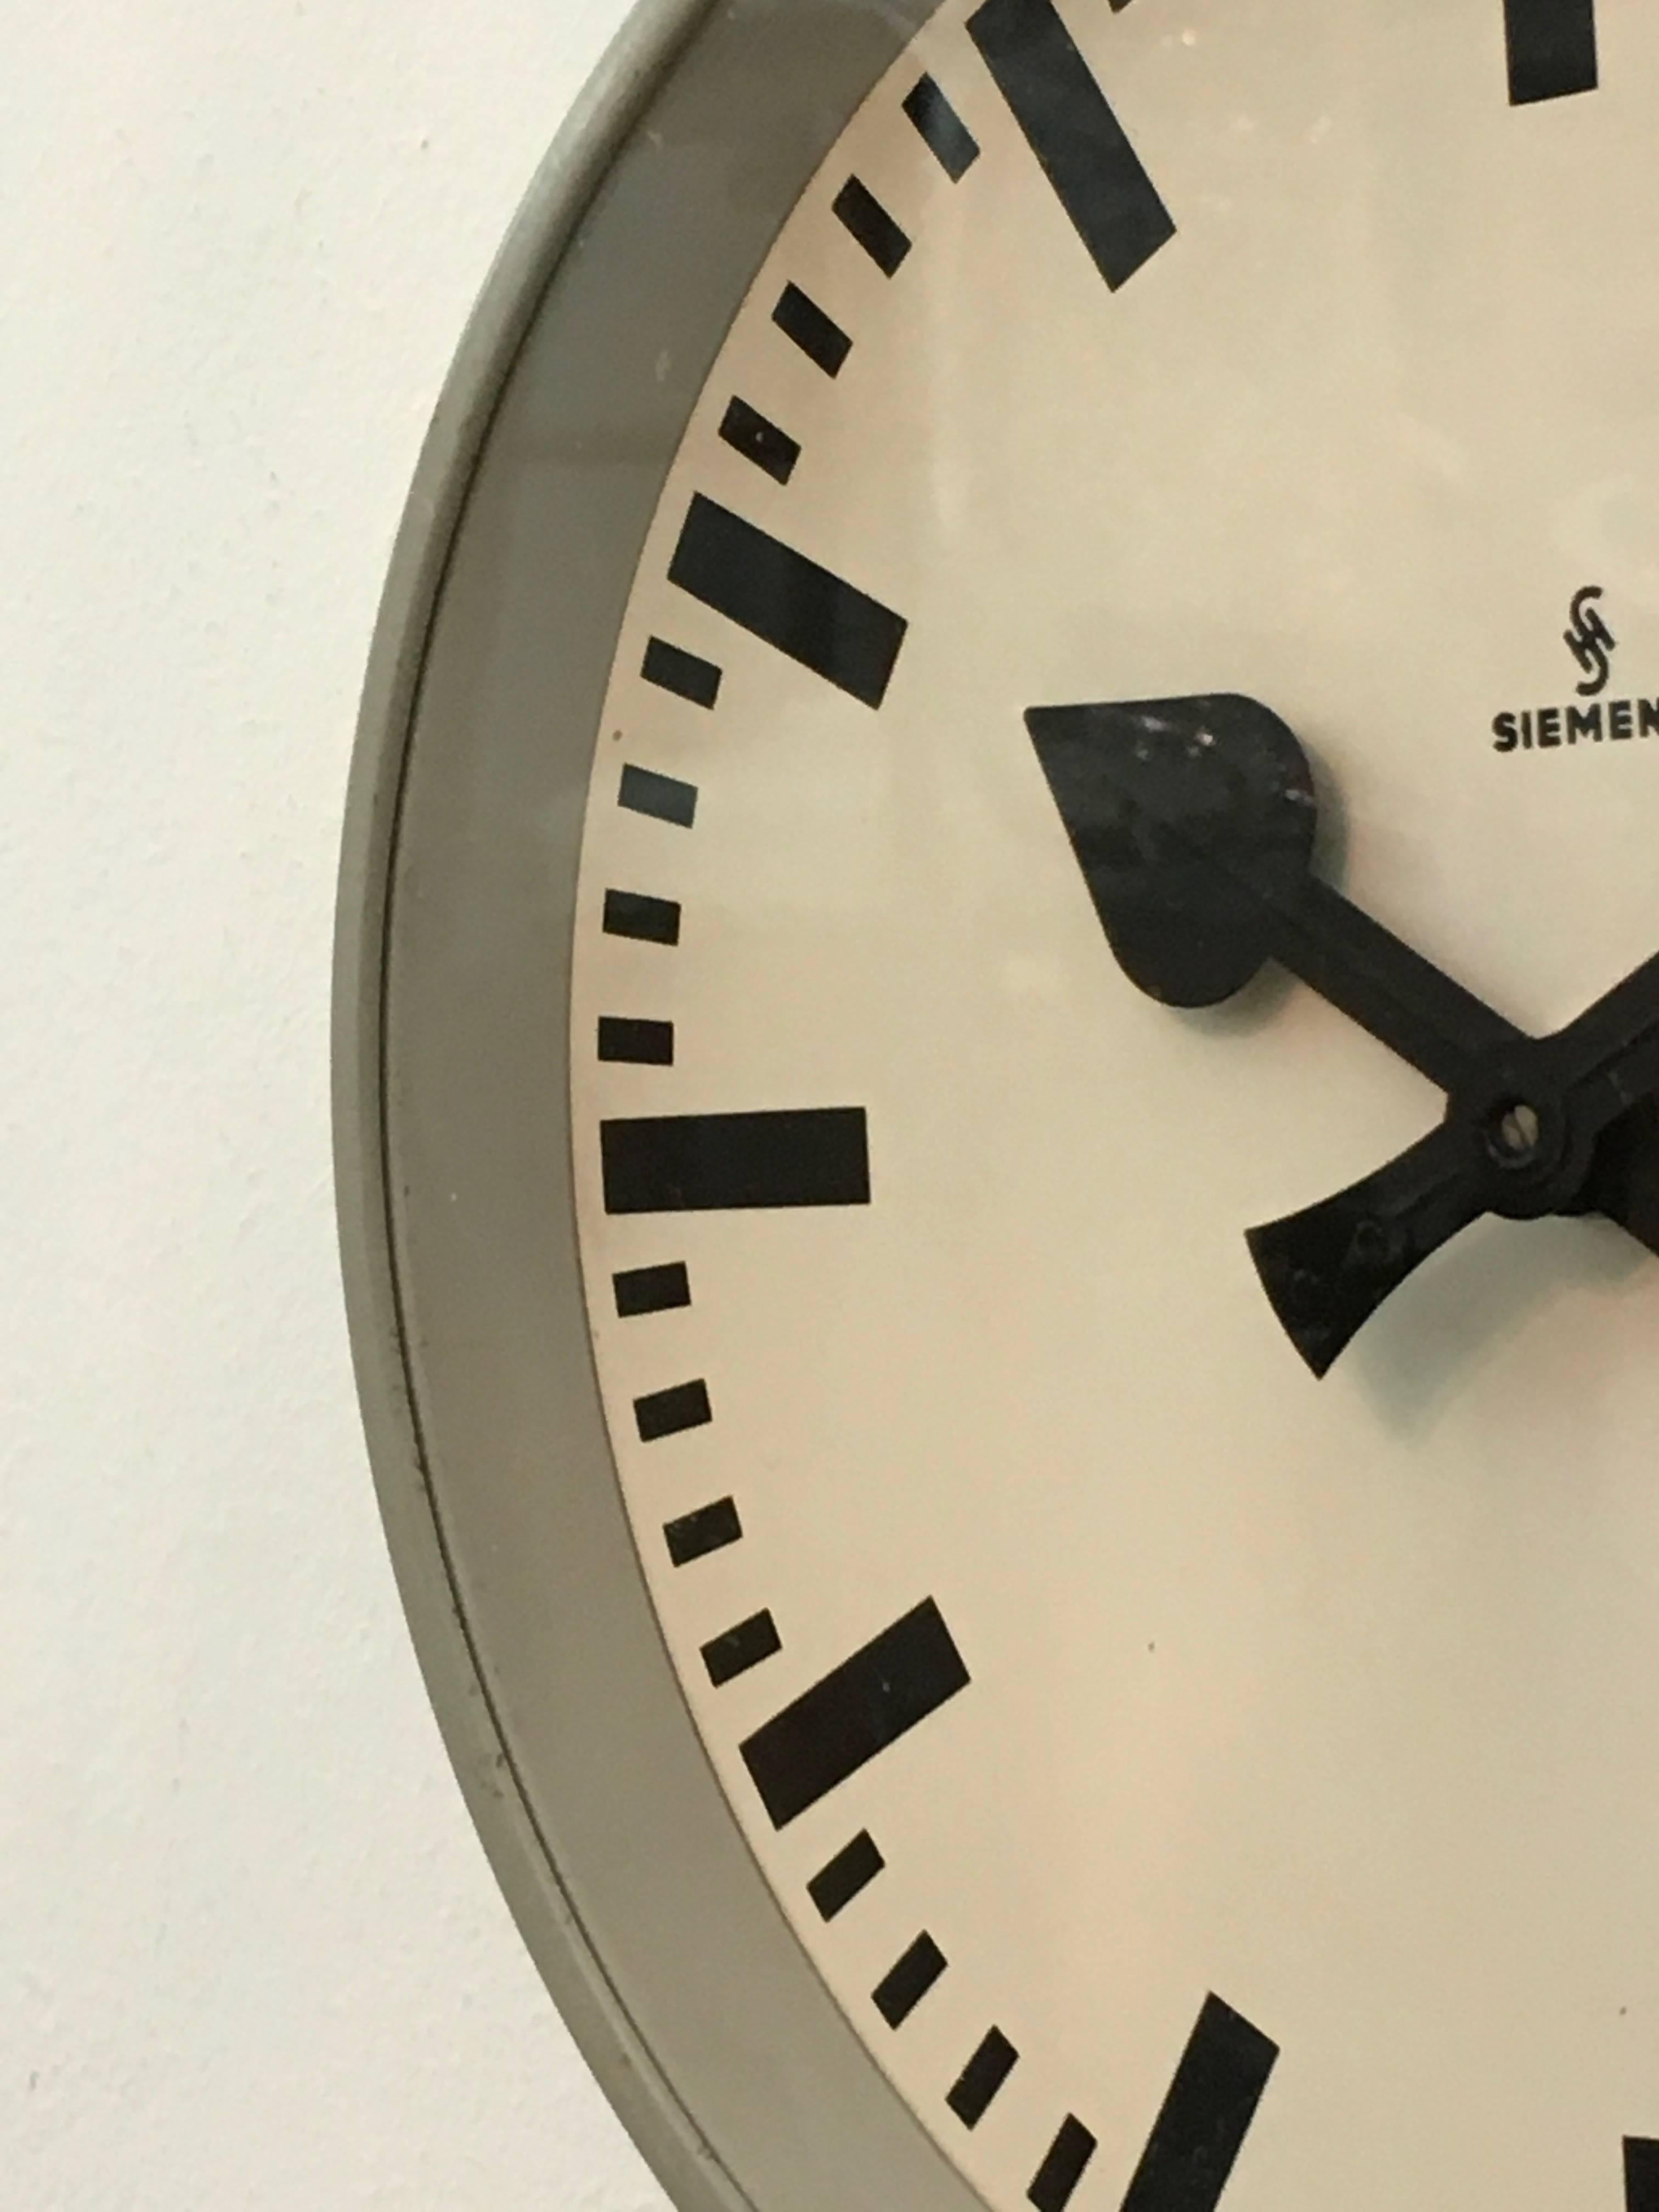 German Siemens Factory or Workshop Wall Clock